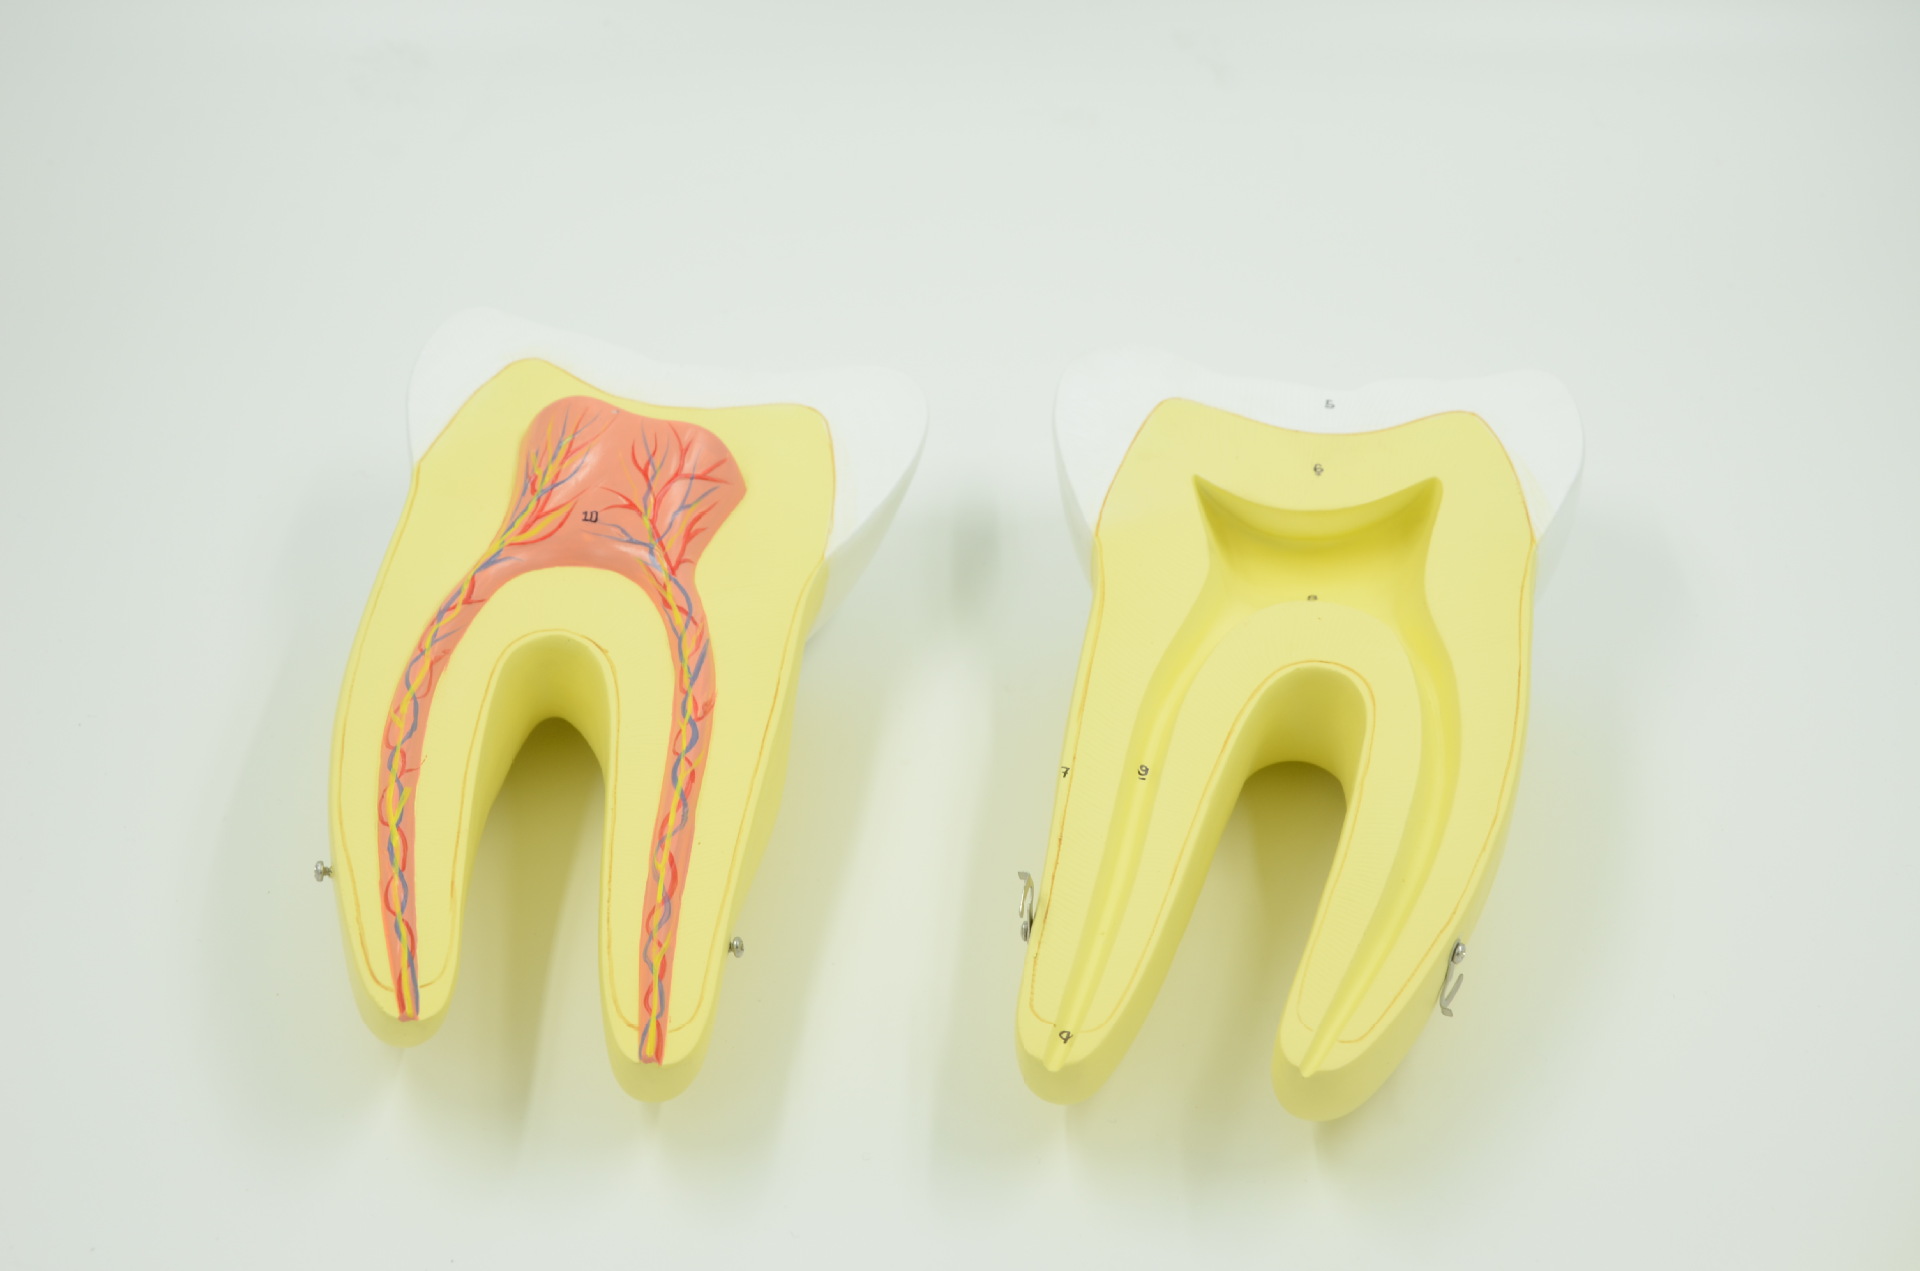 成人正常牙齿解剖模型 医学教学模型 厂家直销 全国包邮